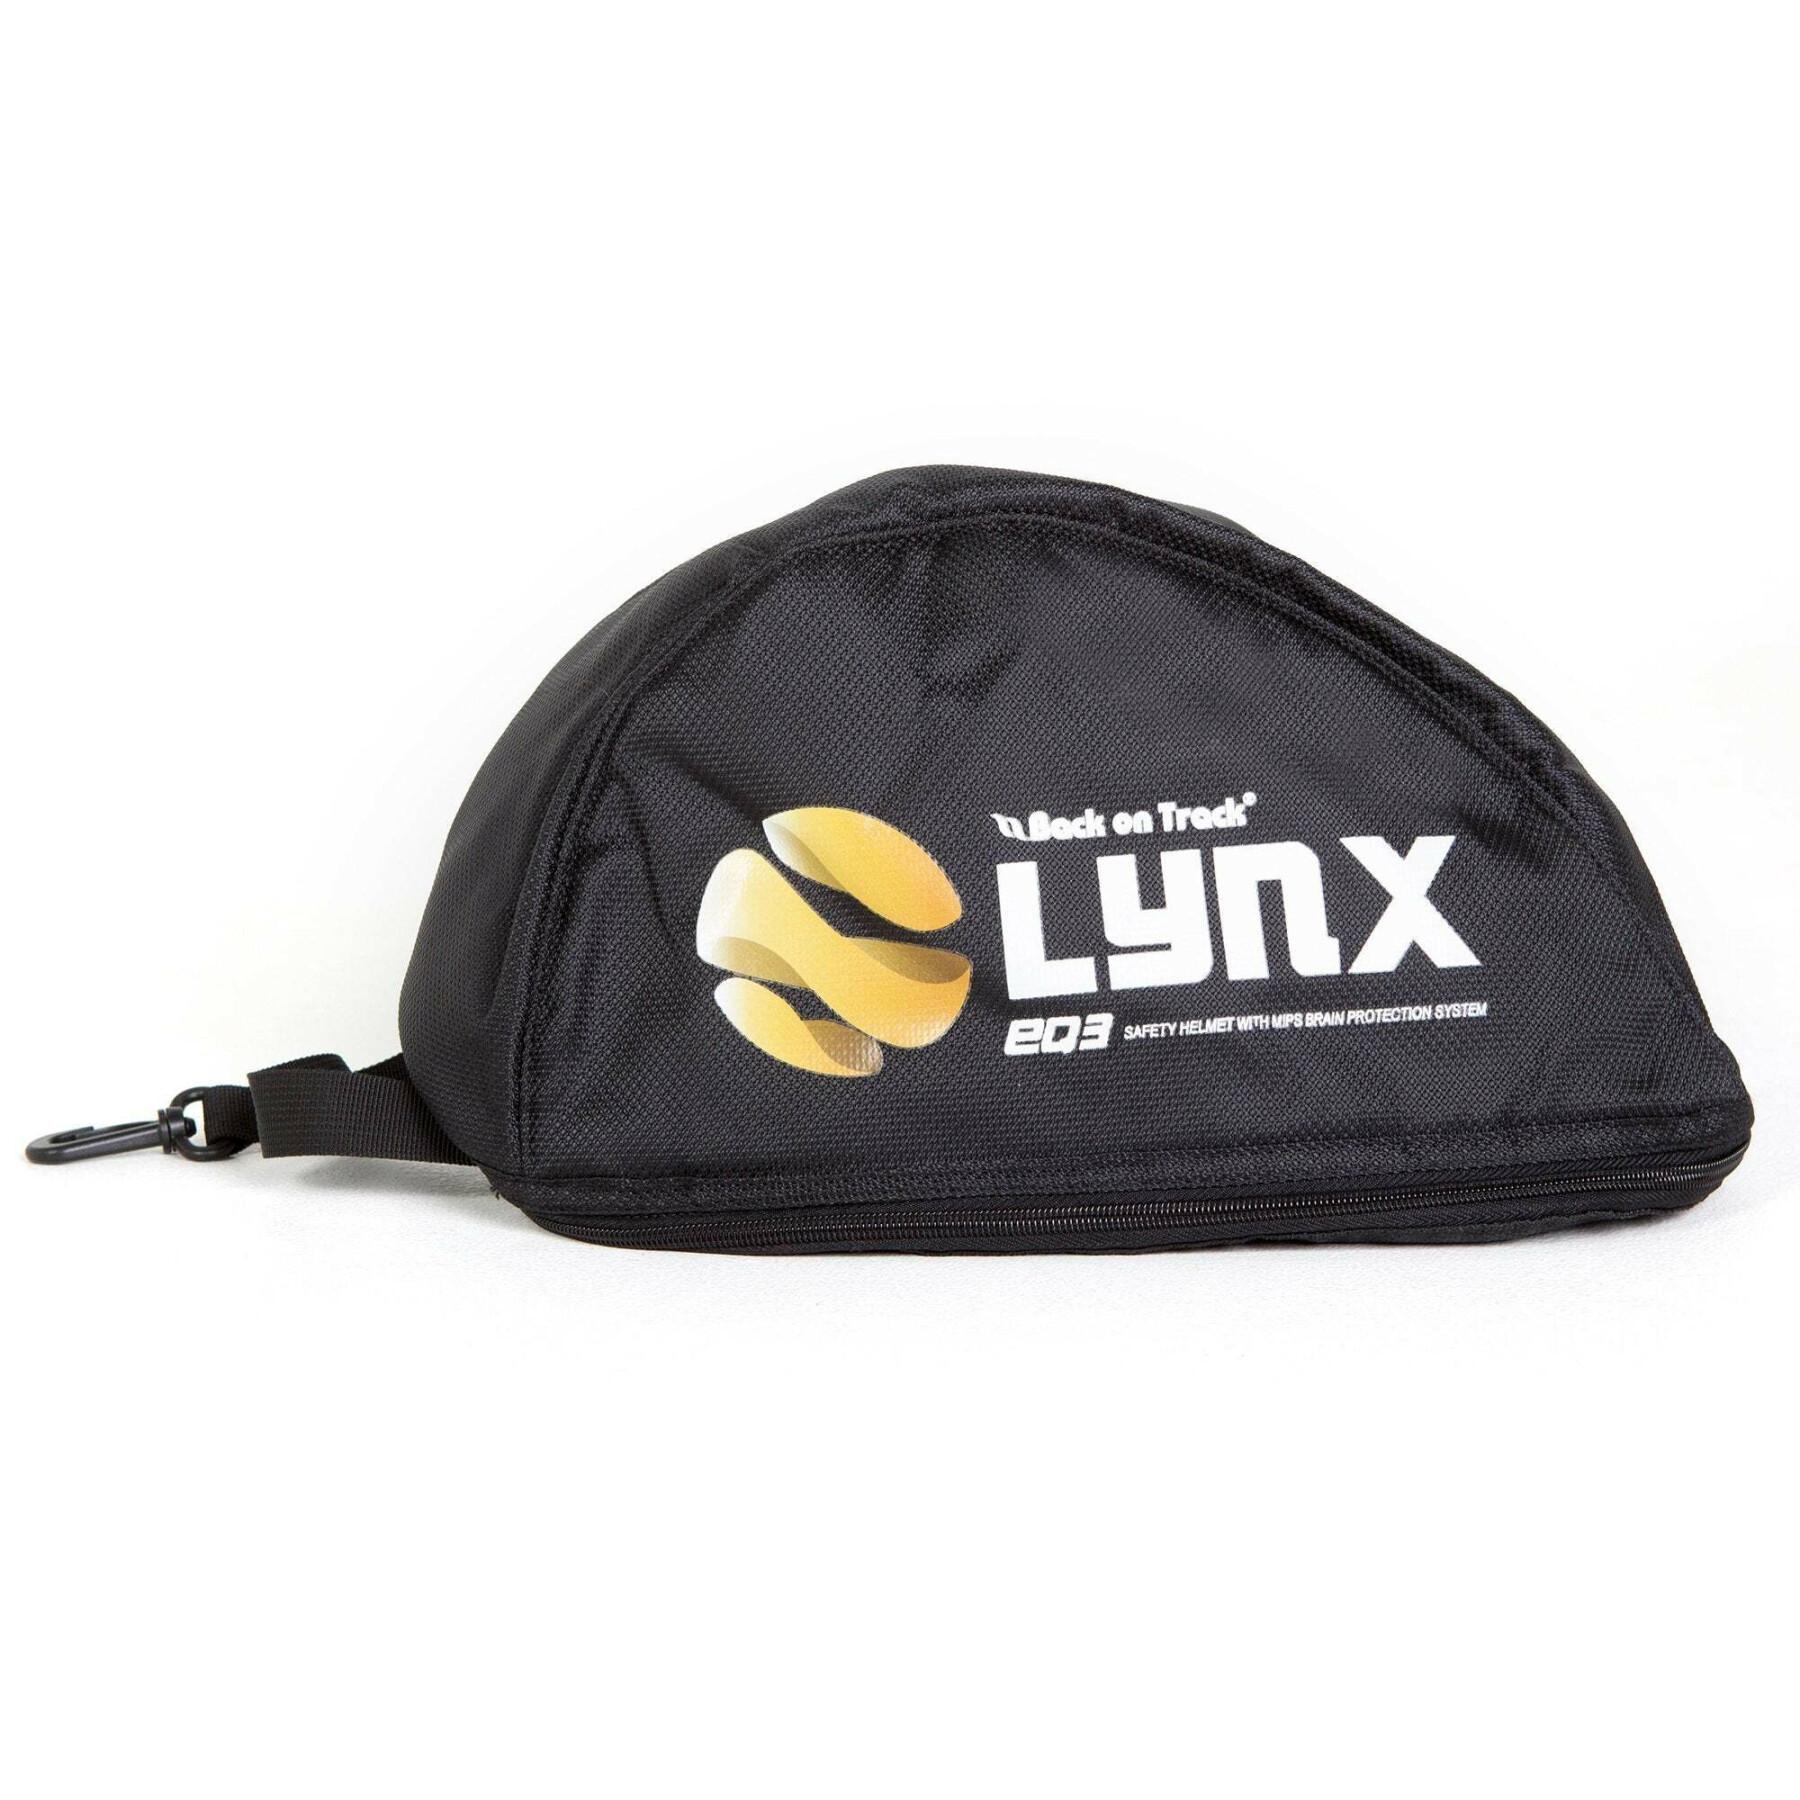 Helmet cover Back on Track Lynx